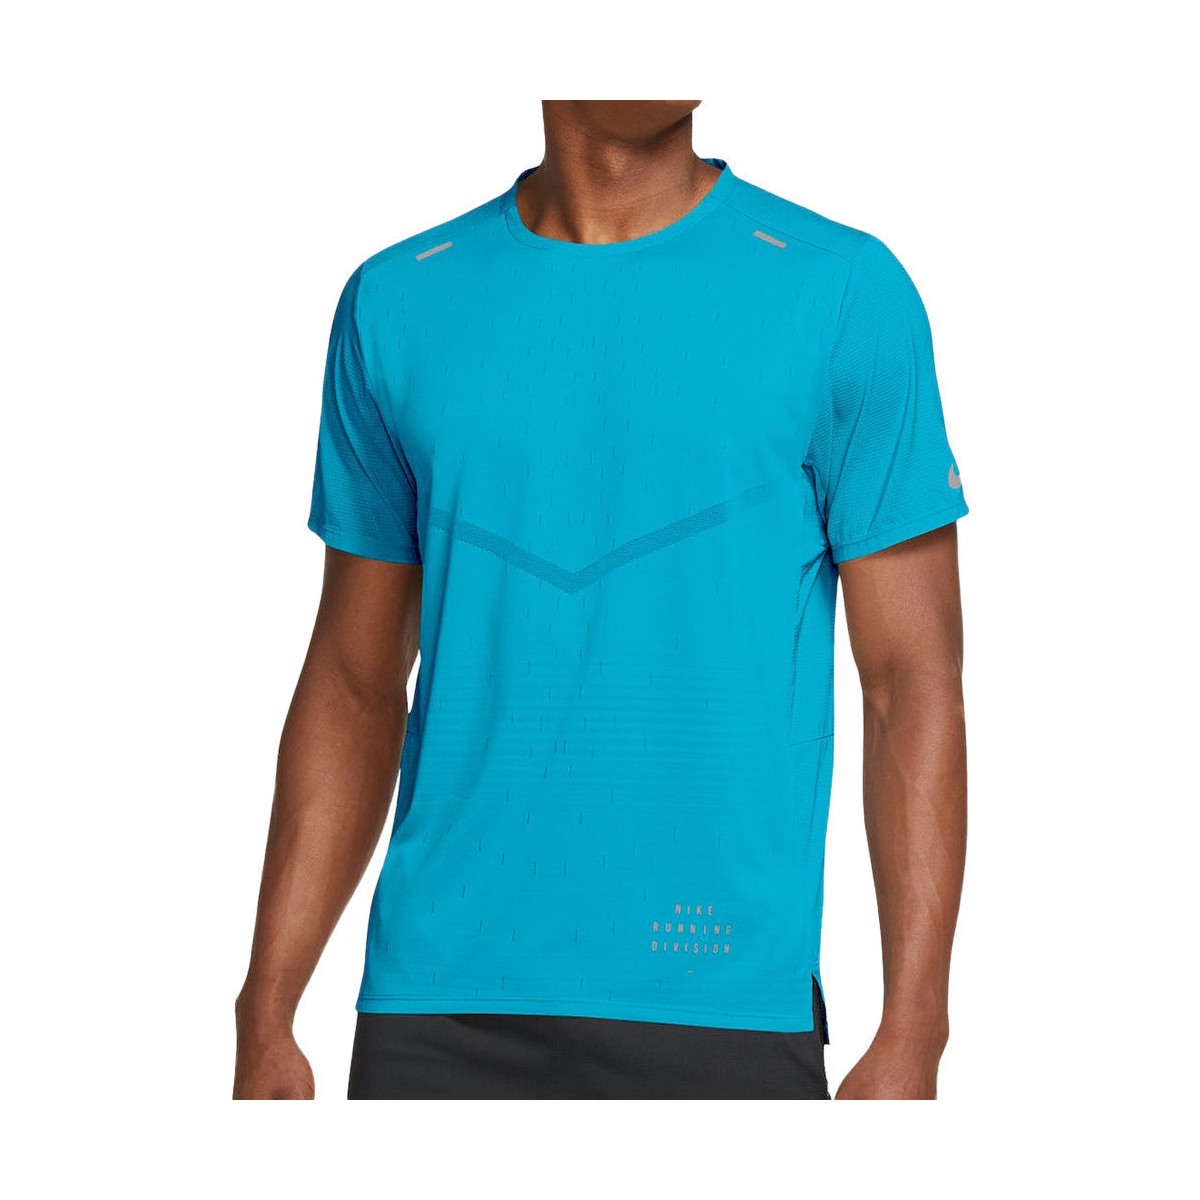 textil Hombre Tops y Camisetas Nike  Azul